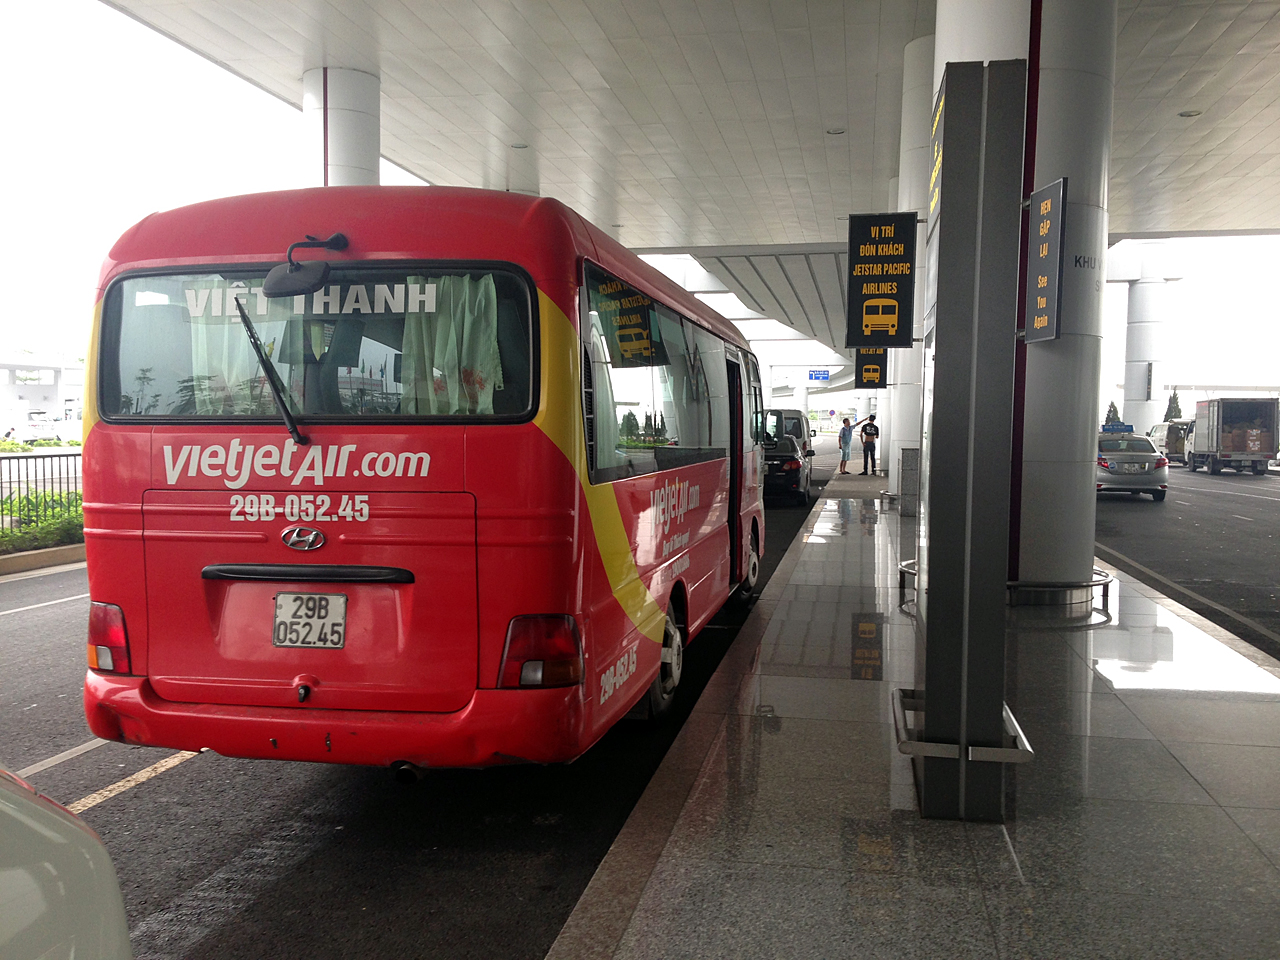  하노이 공항에서 시내로 들어가는 항공사 미니버스를 탈 수 있다.